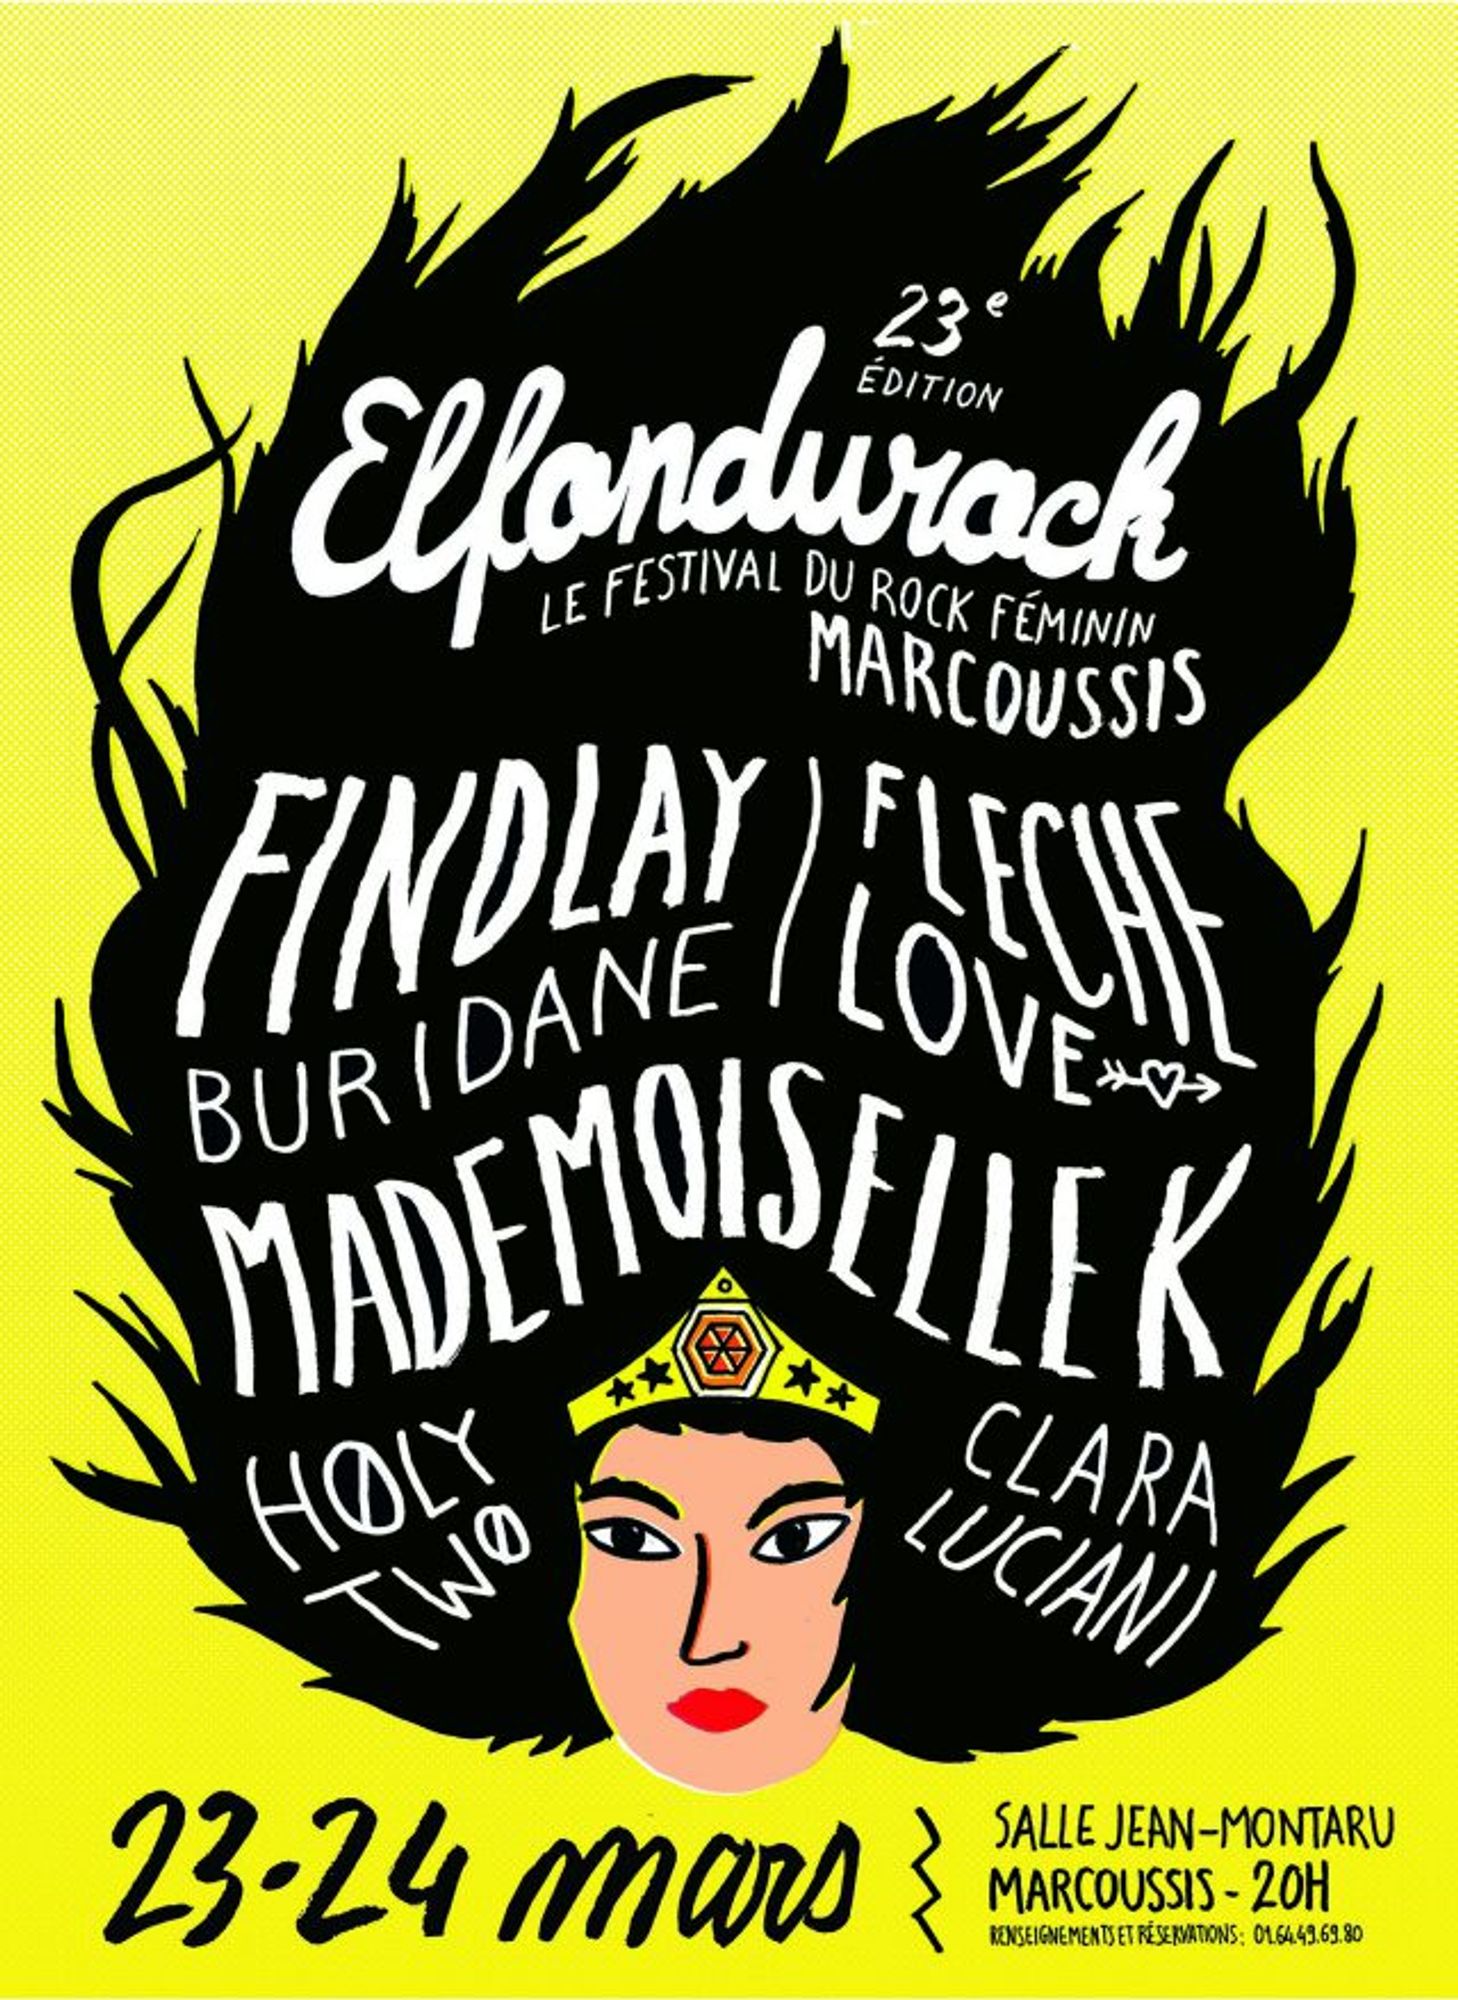 OUI FM présente la 23ème édition du festival ELFONDUROCK